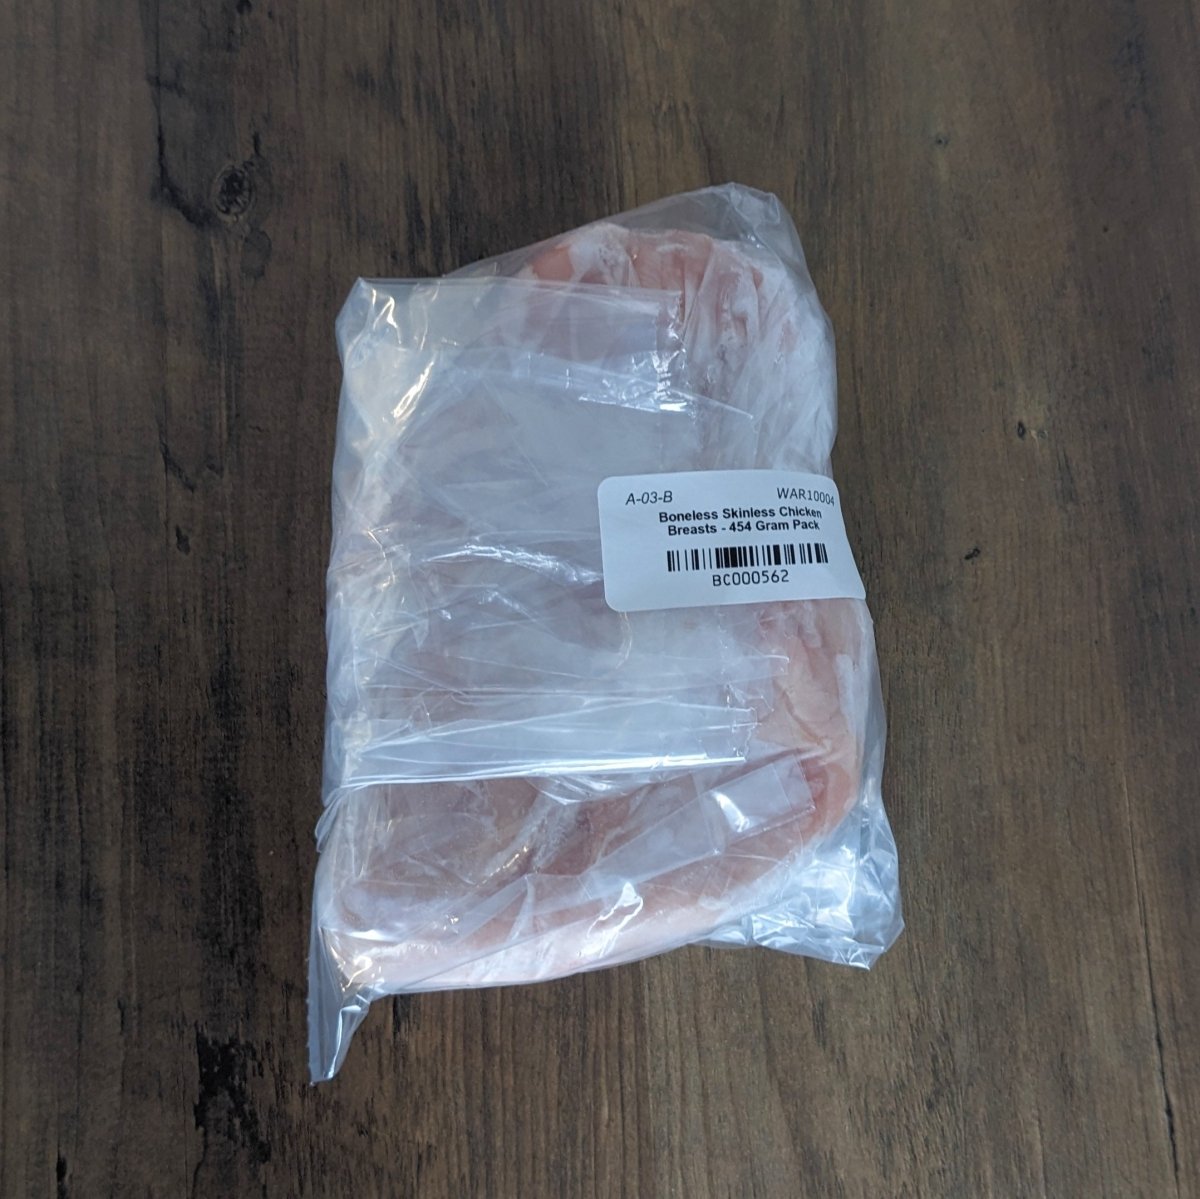 Boneless Skinless Chicken Breasts - 454 Gram Pack - Oonnie - Warburg Hutterite Colony